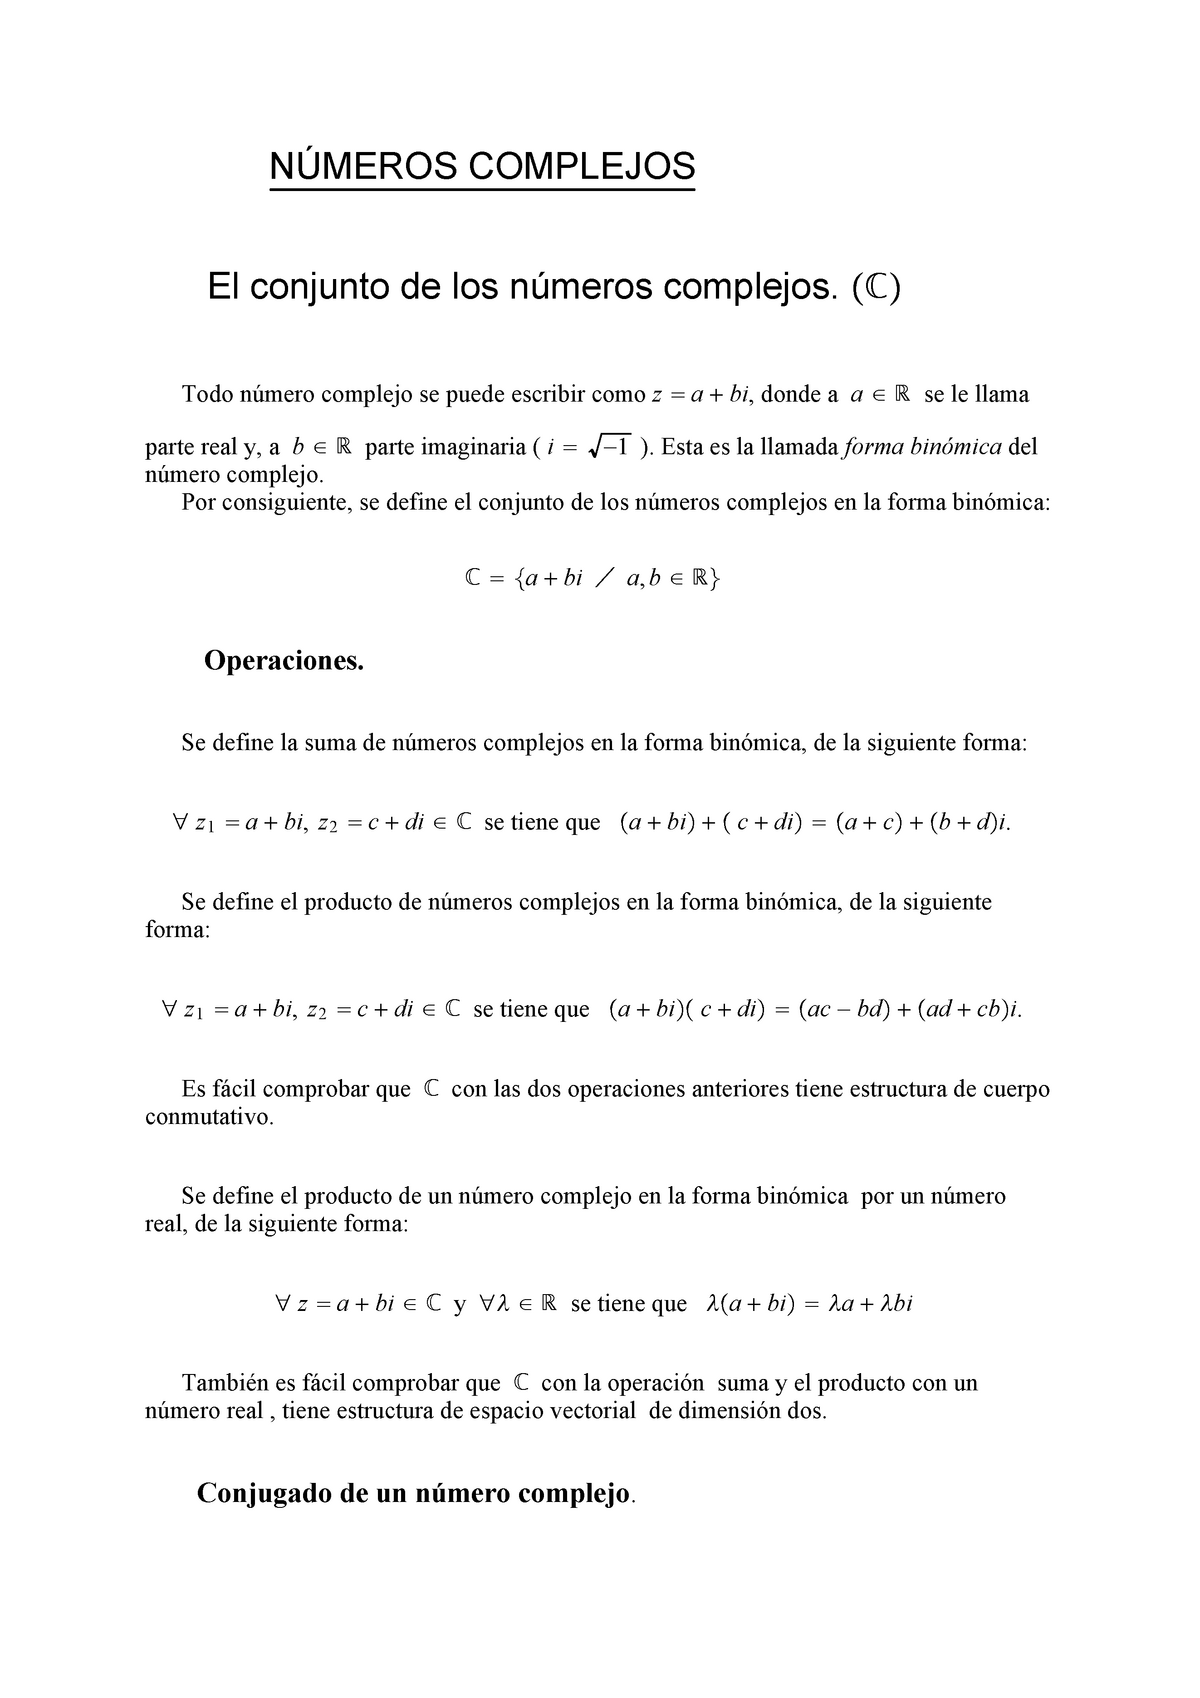 Apuntes Leccion 4 Numeros Complejos Calculo I 41901 Studocu